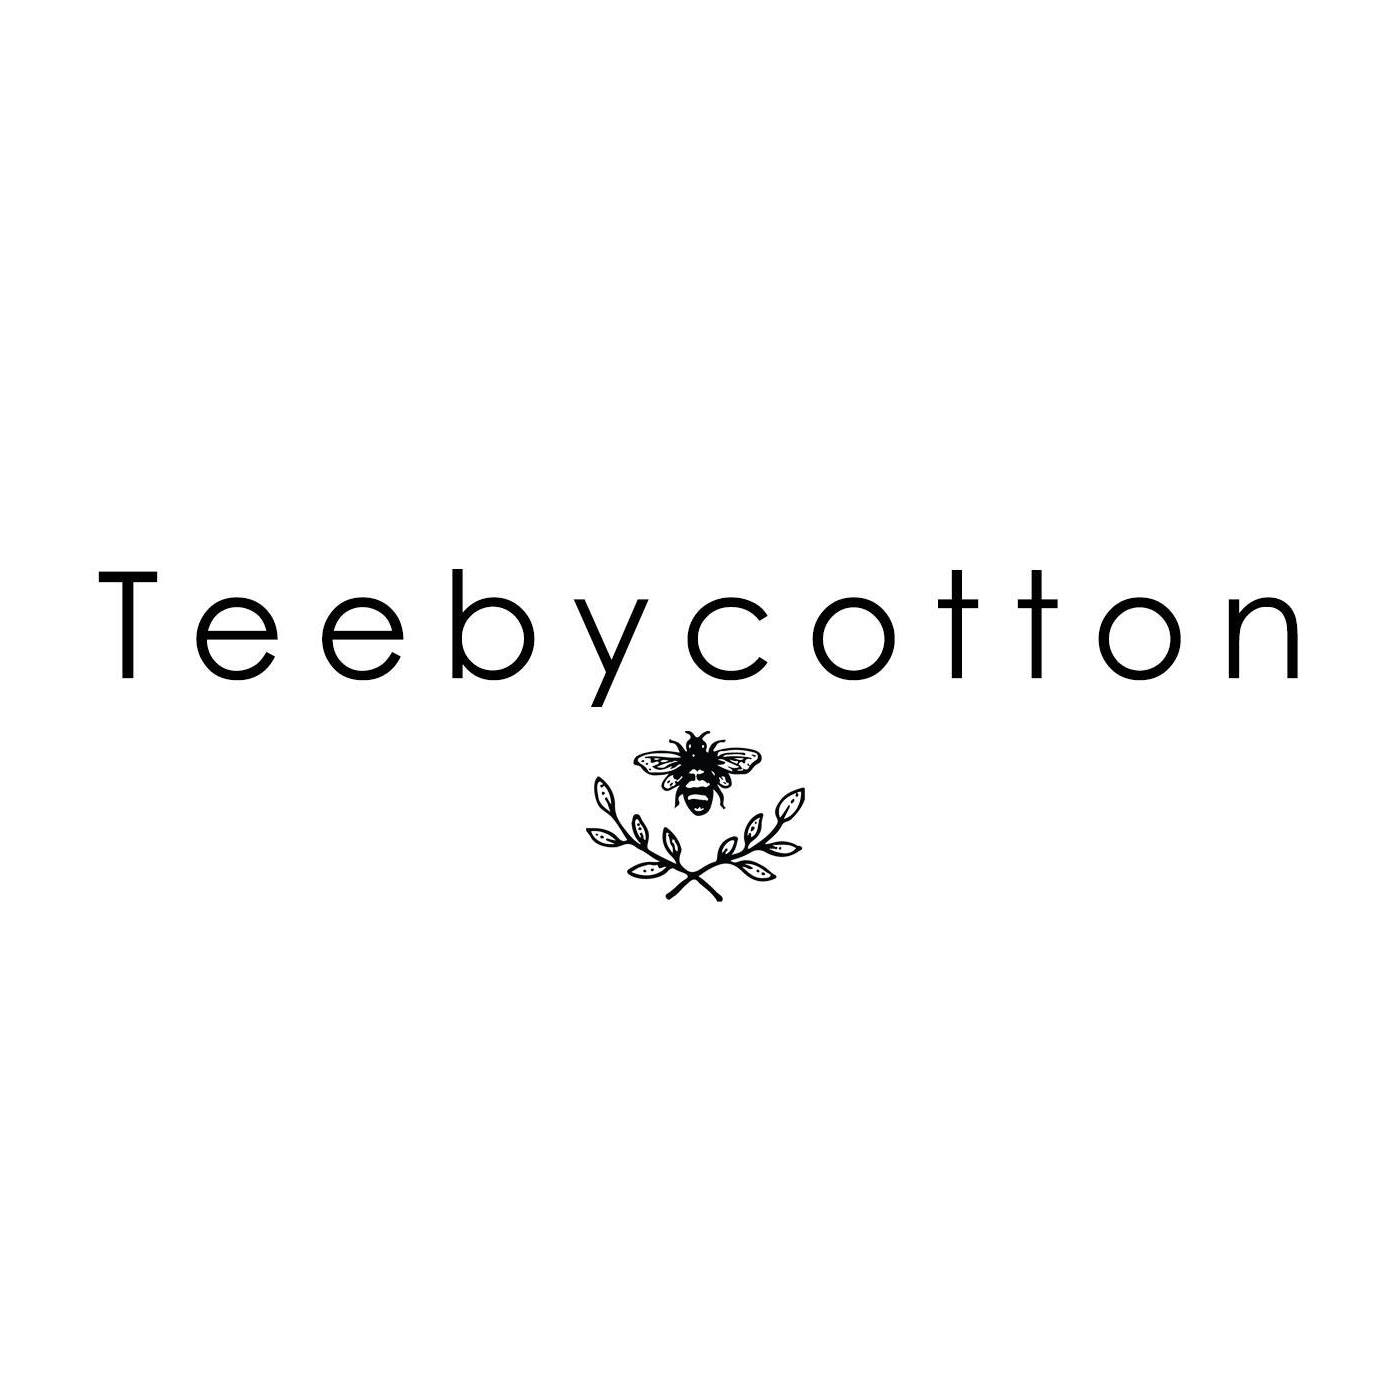 Teebycotton